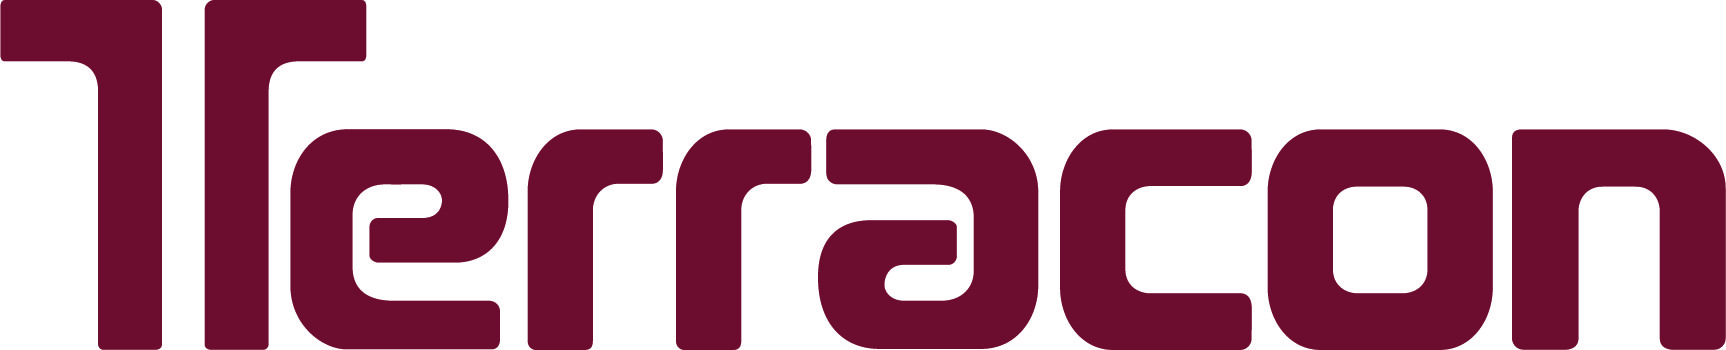 Logo - Terracon